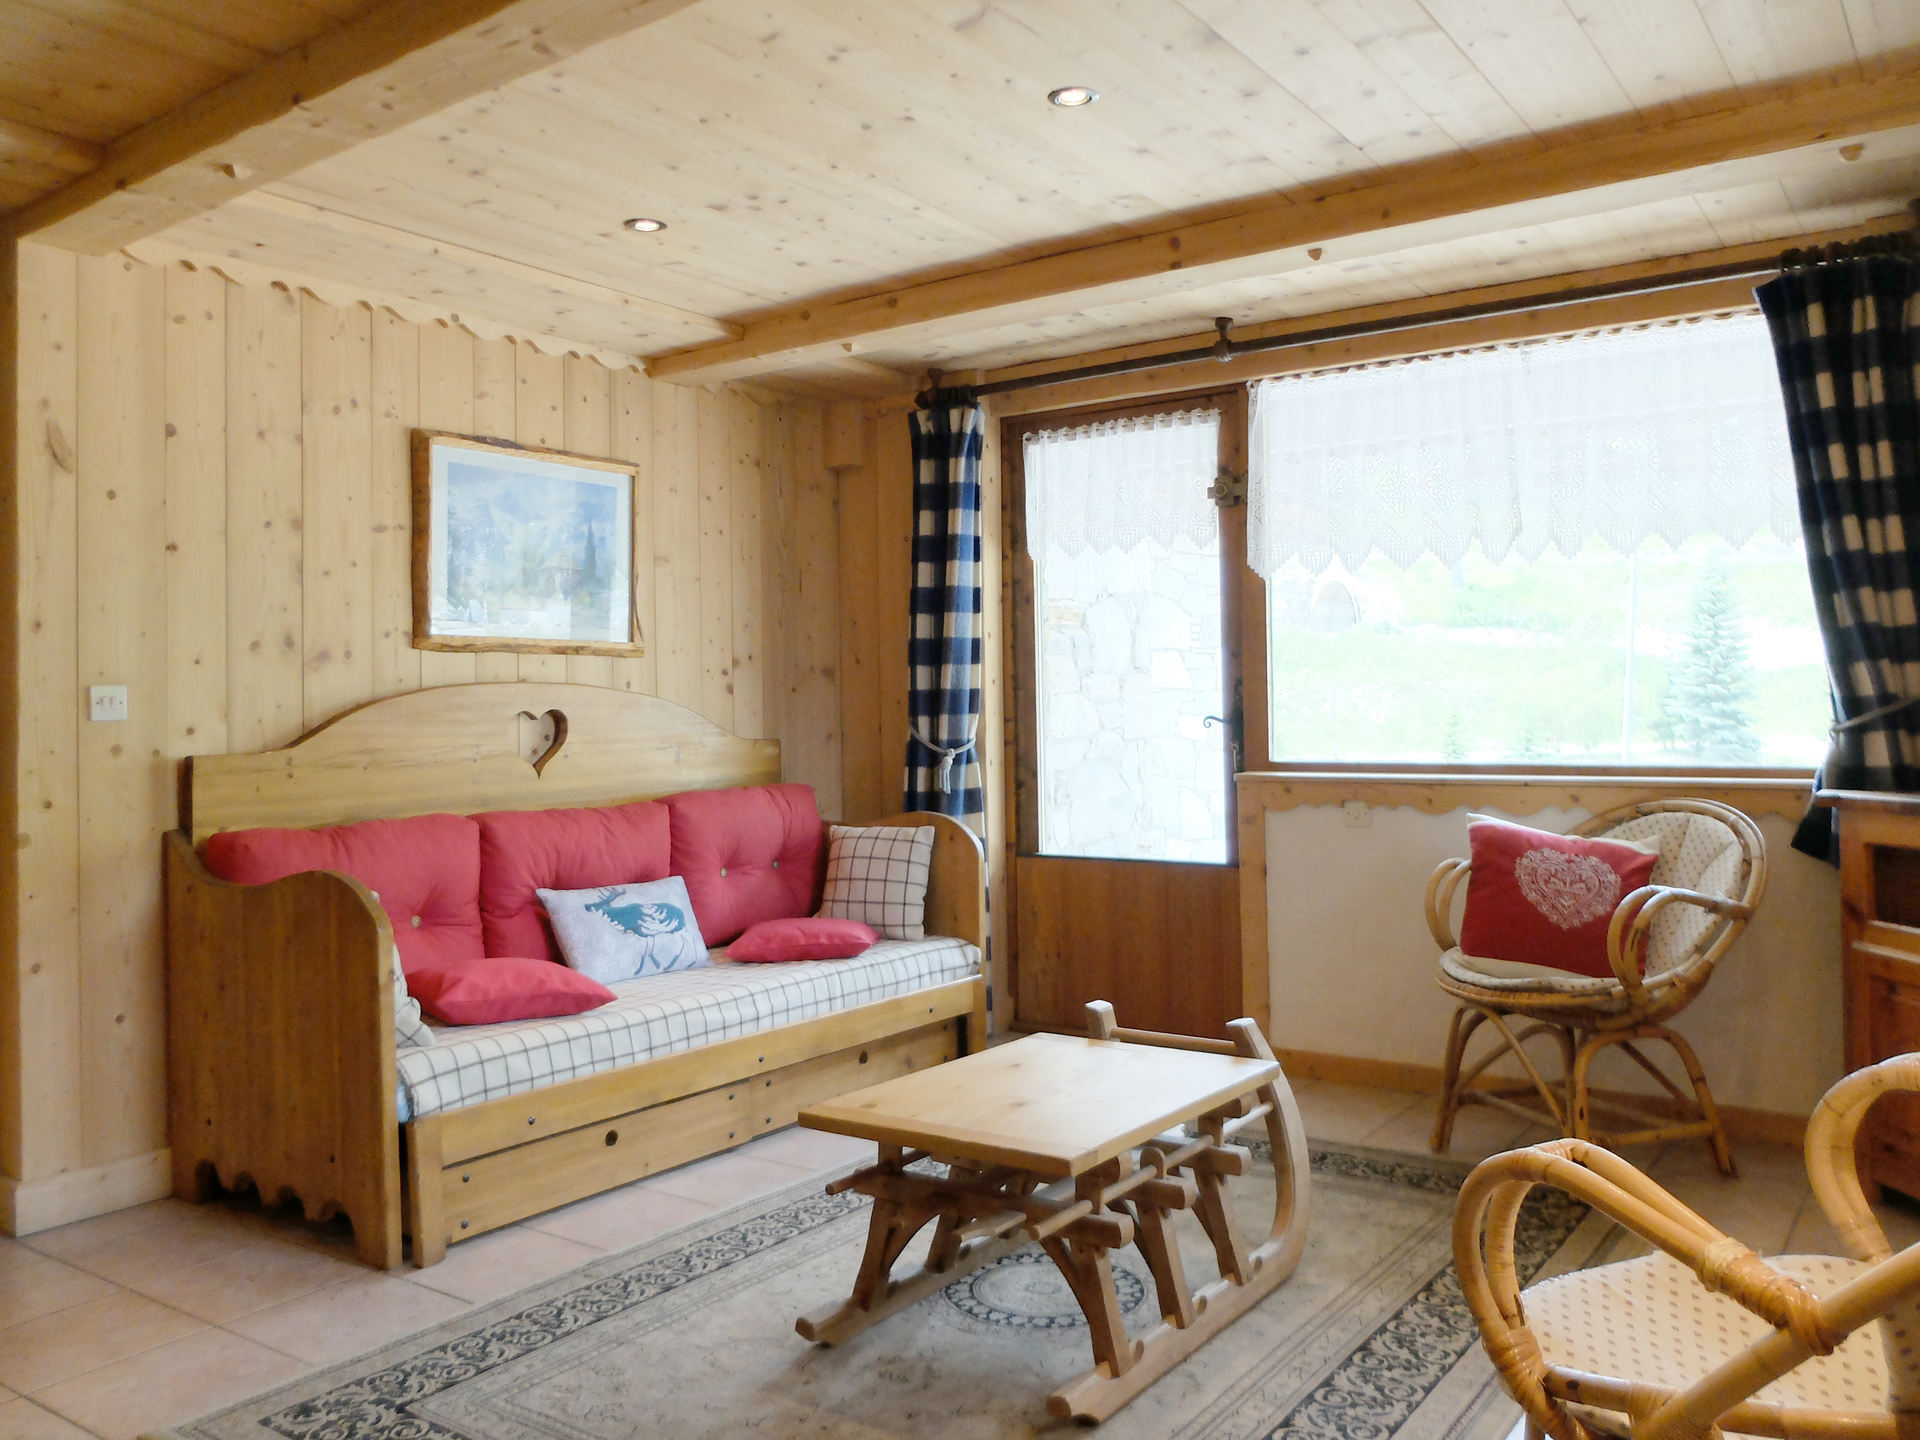 2 rooms 4 people - travelski home choice - CHALET NEVE - Tignes 2100 Le Lavachet